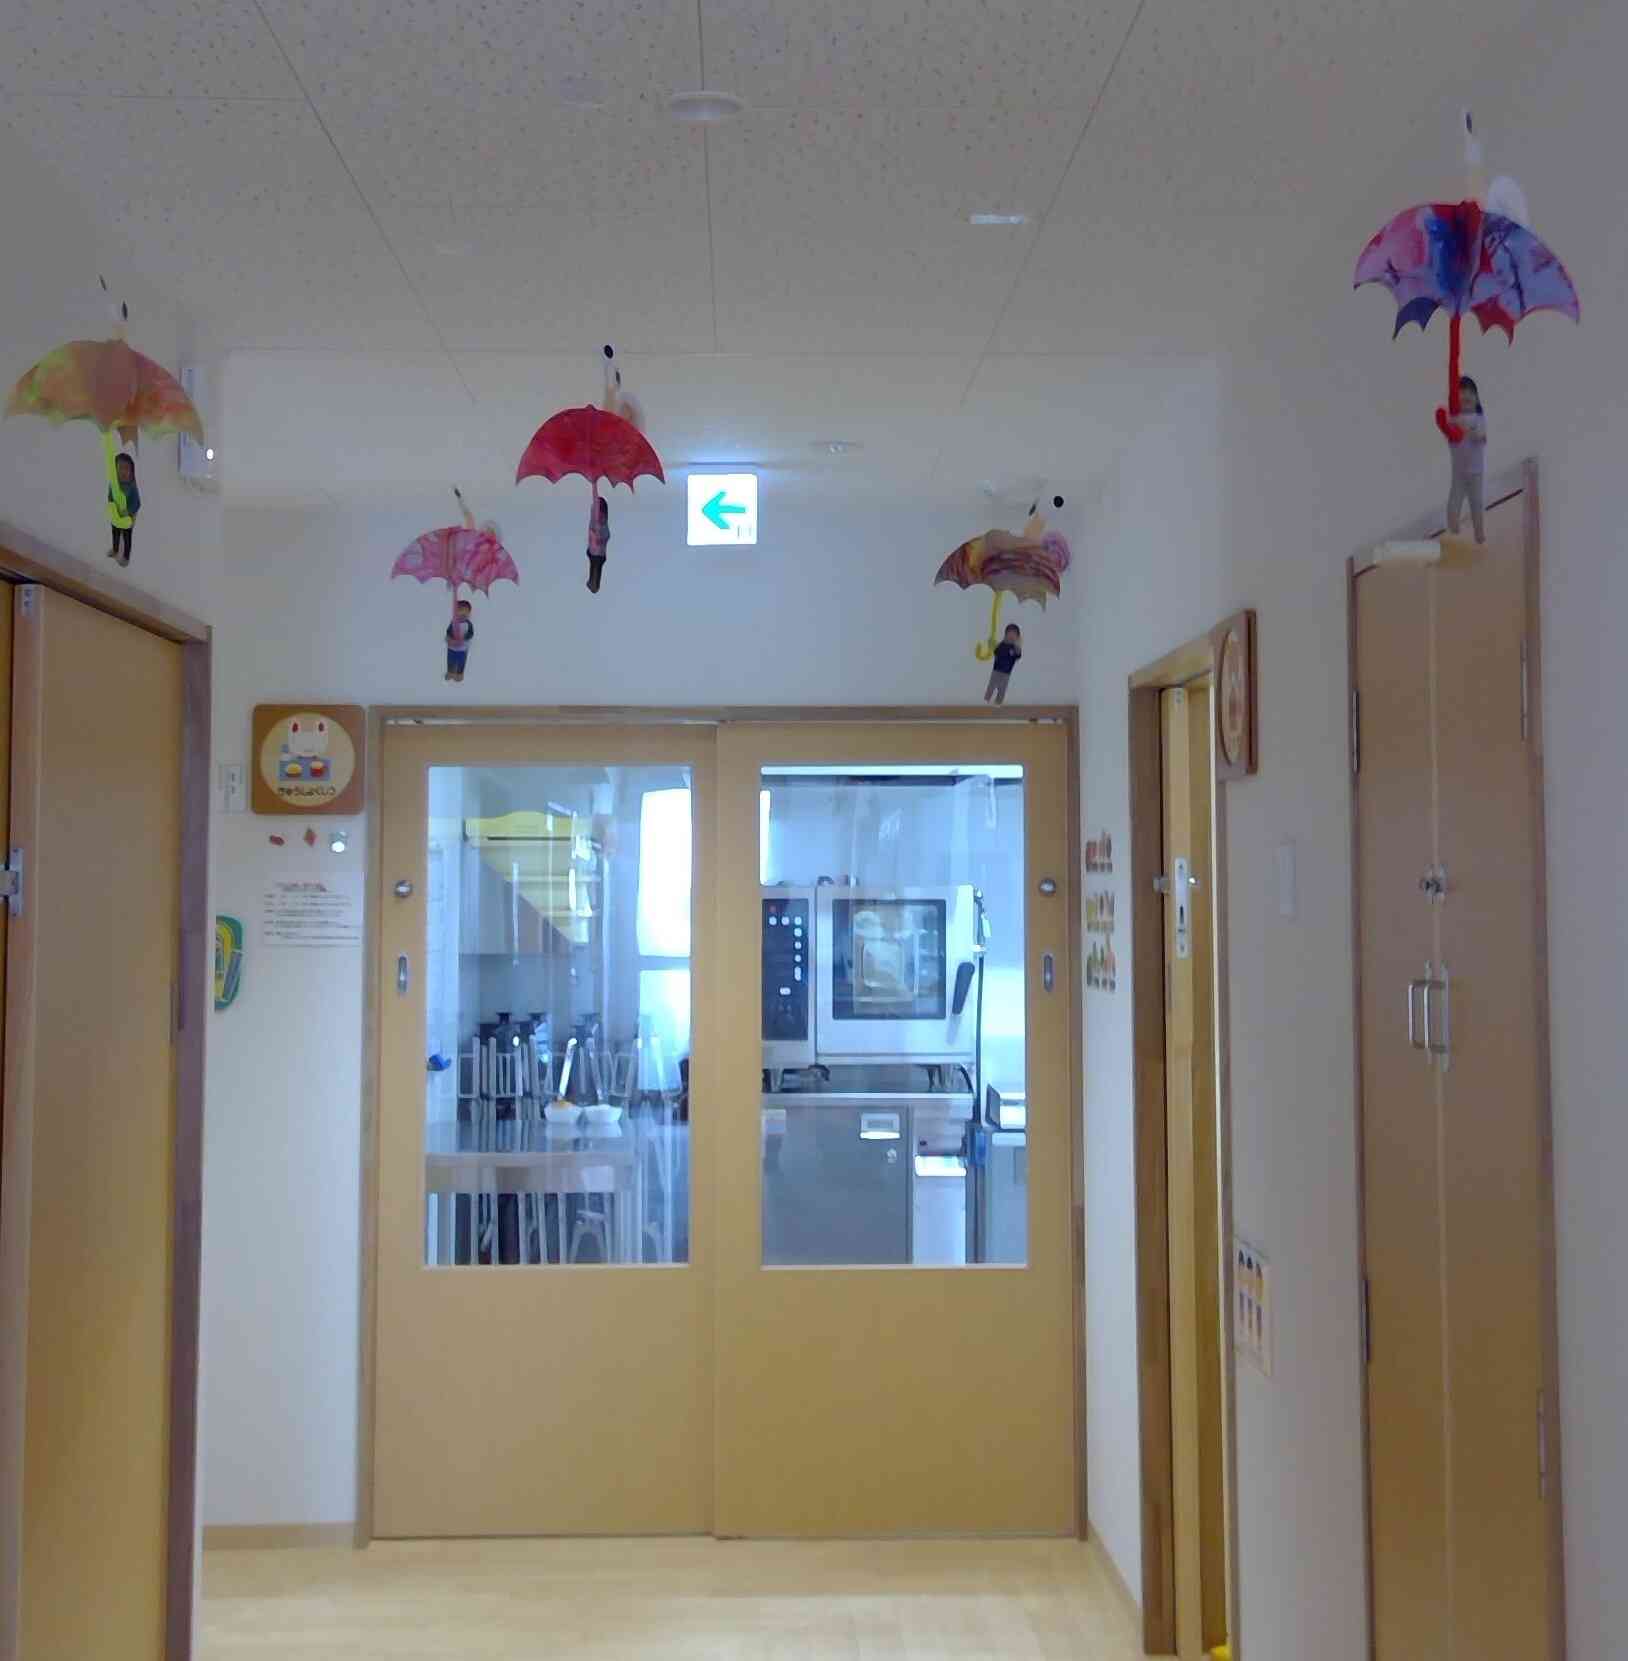 塗り終わった画用紙は、傘とカタツムリになって廊下でみんなをお出迎えしています。